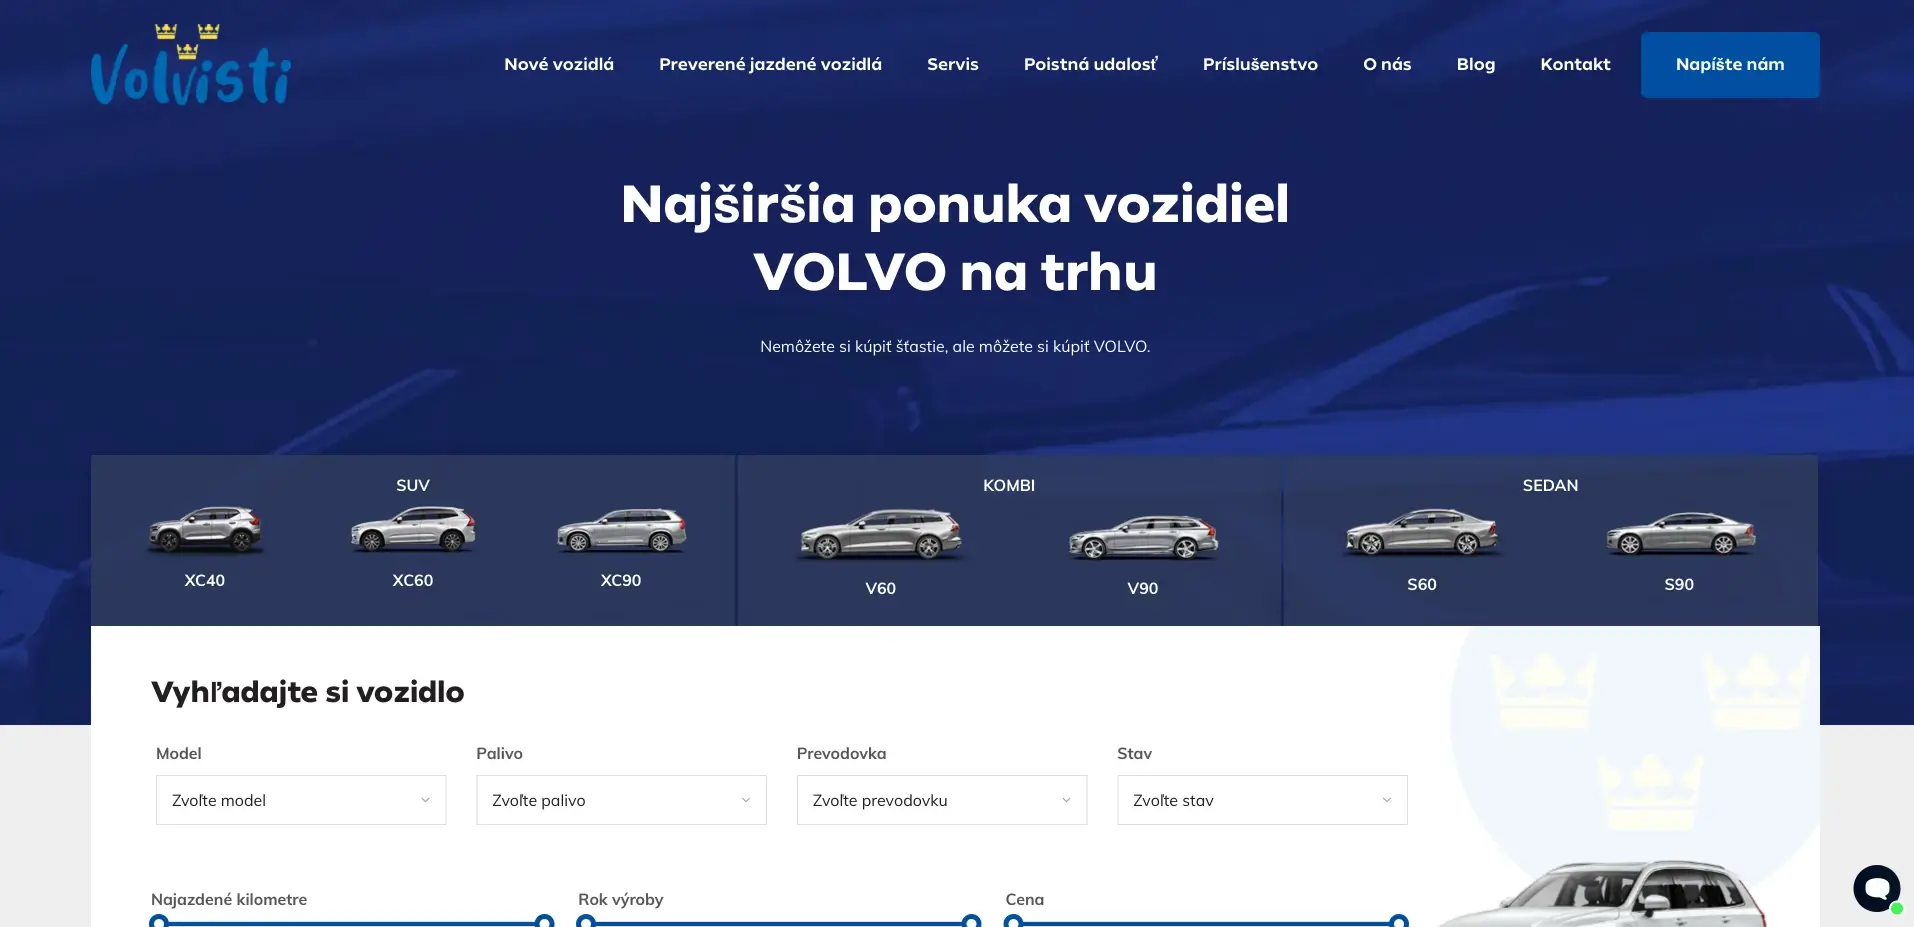 Volvisti - Najširšia ponuka vozidiel VOLVO na trhu